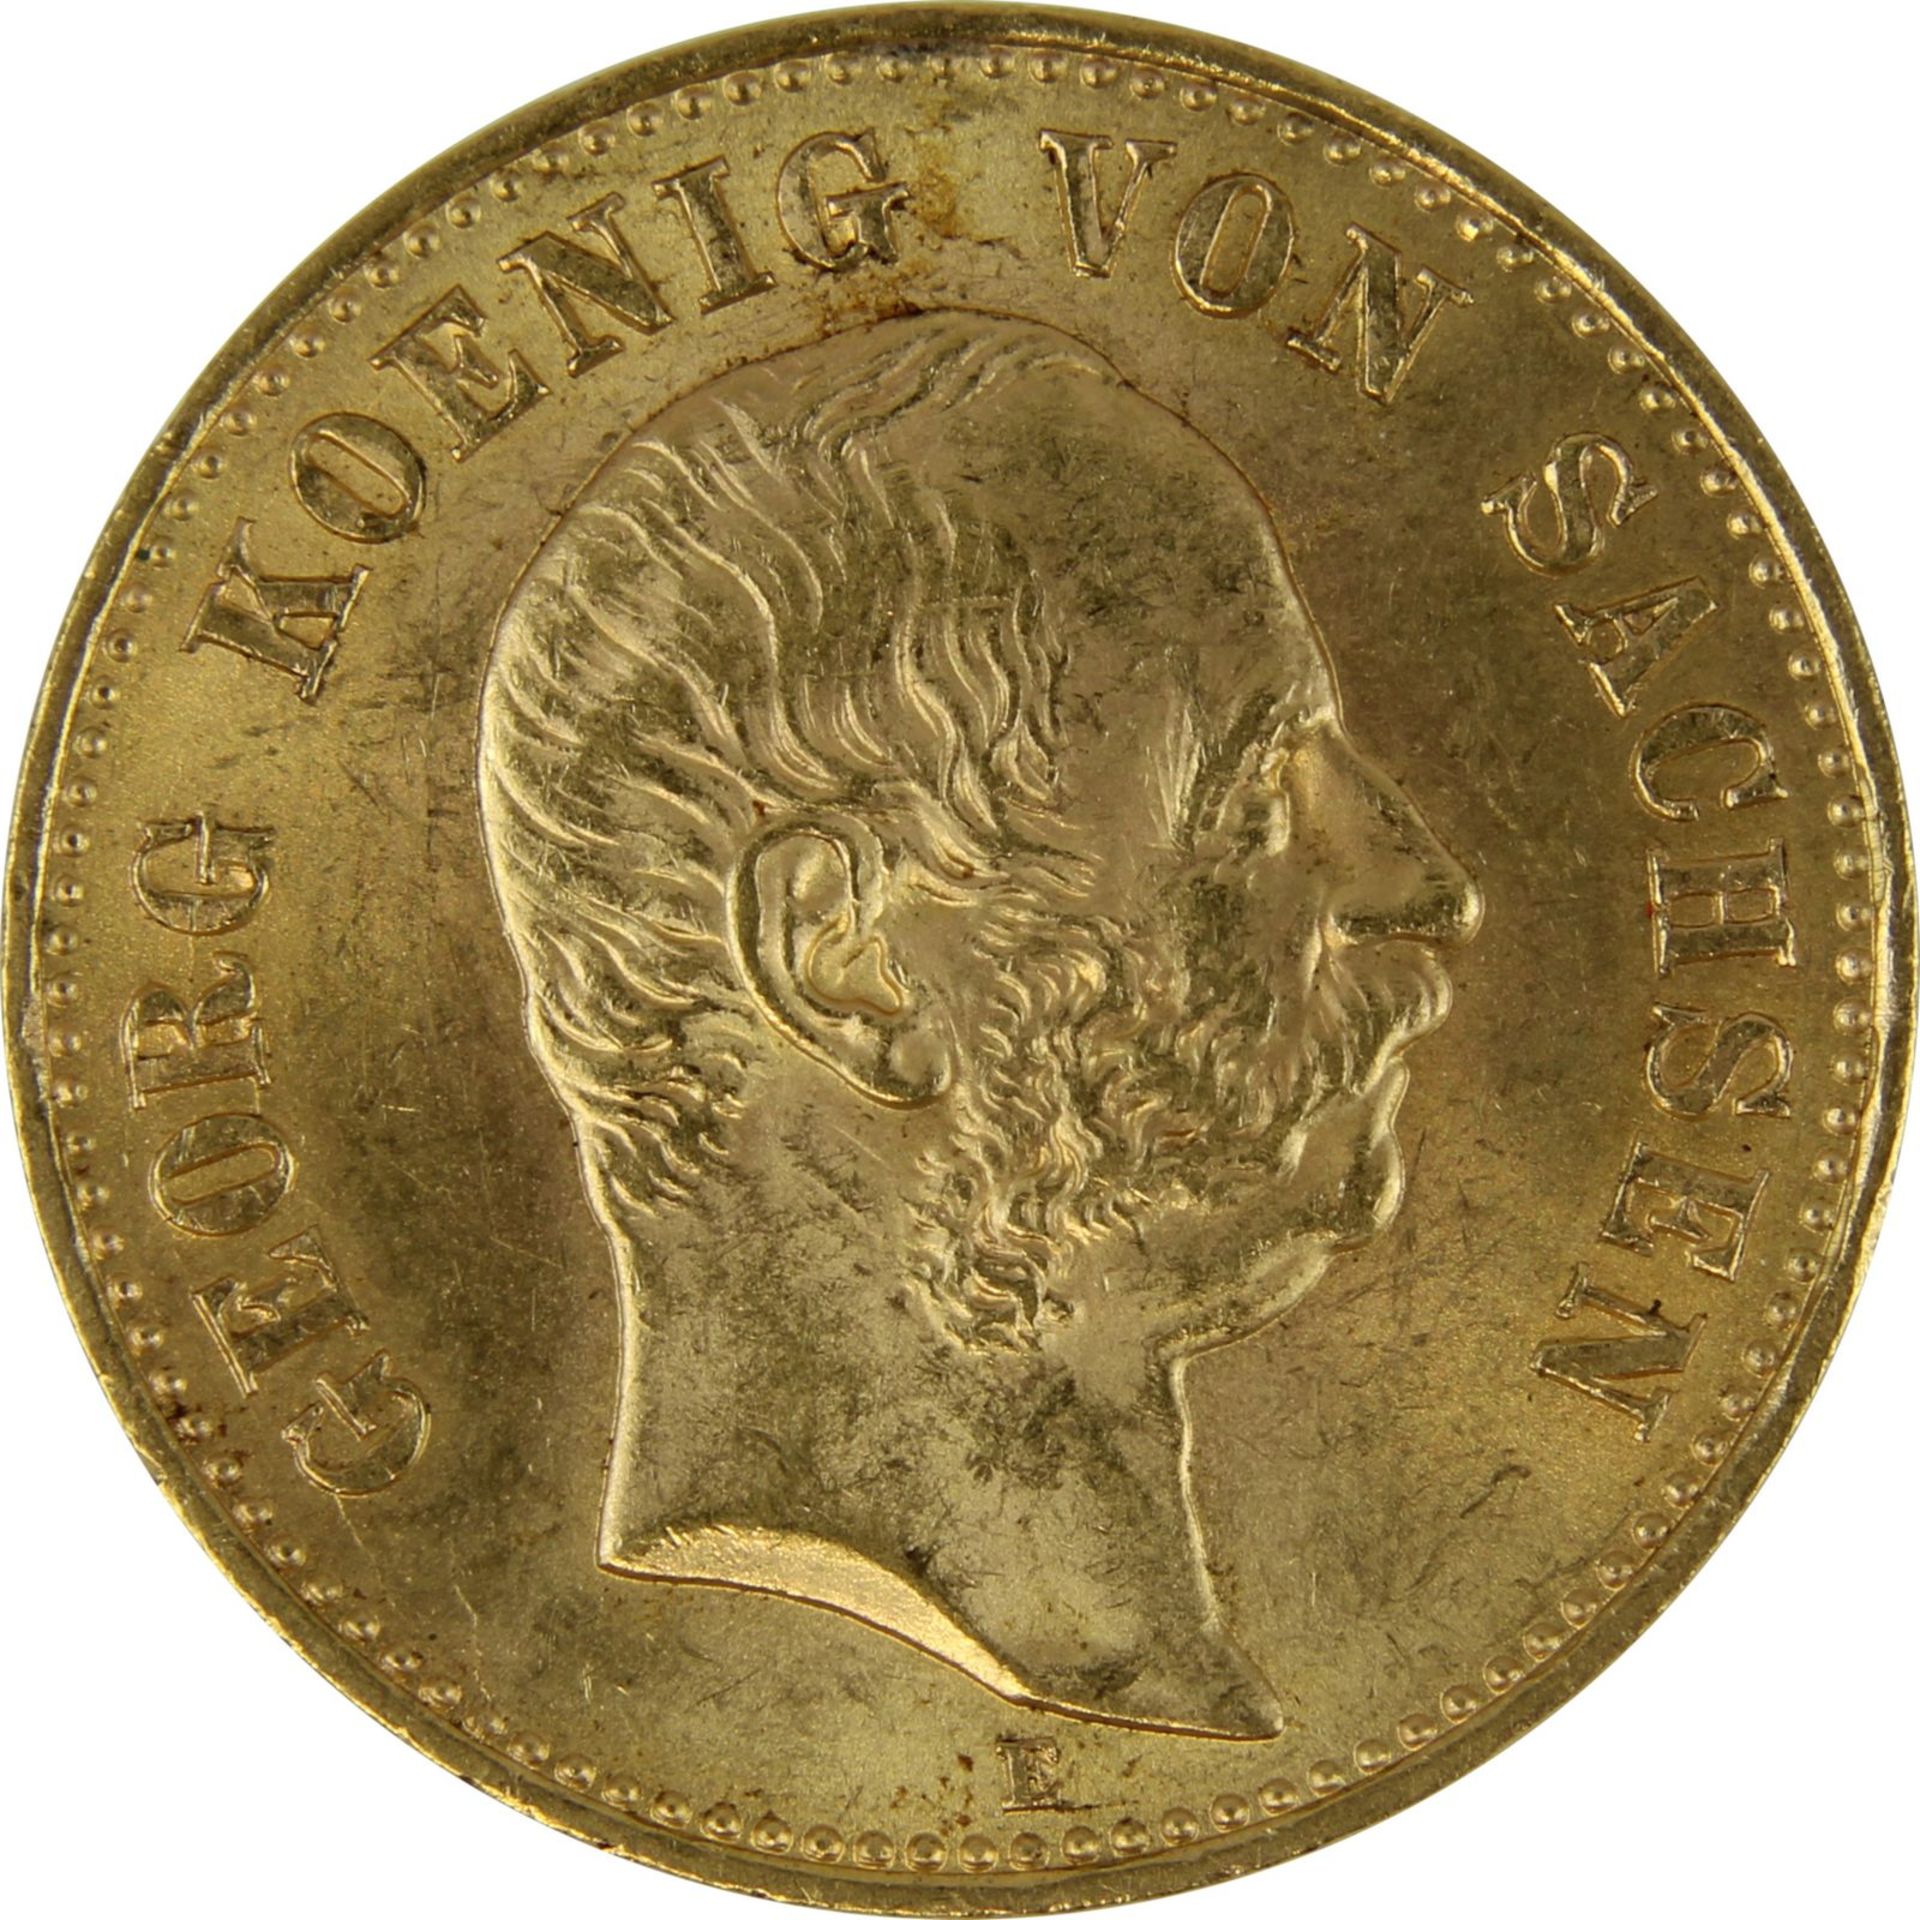 Goldmünze zu 20 Mark, Sachsen - Deutsches Reich 1903, Avers: Kopf Georg König von Sachsen nach re. - Image 2 of 3